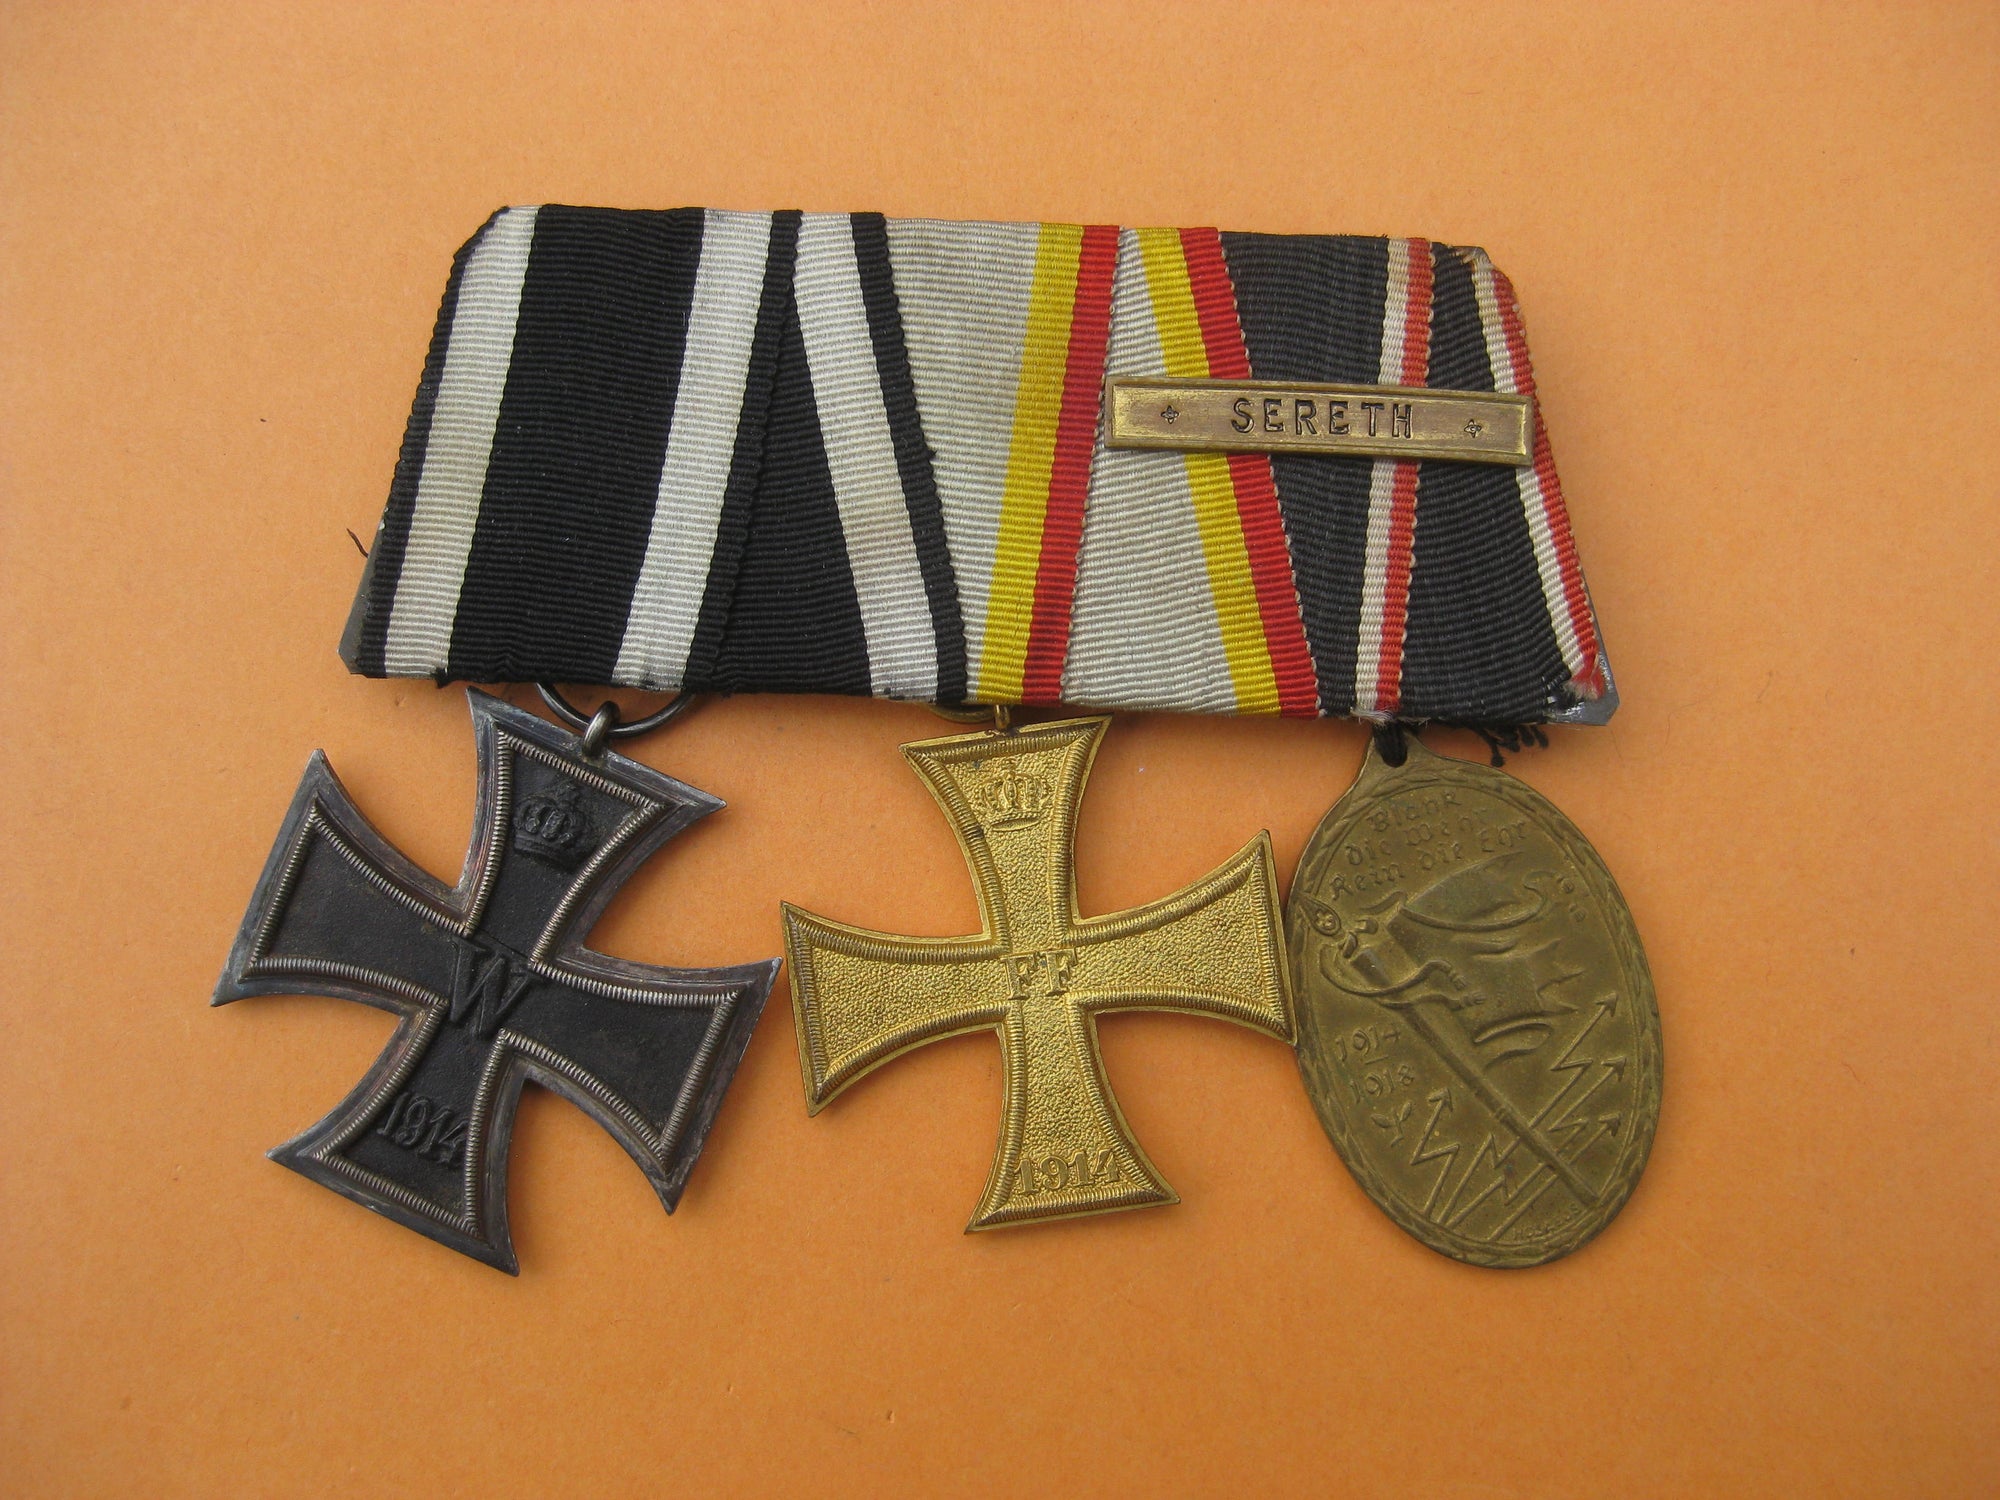 3er Ordensspange Eisernes Kreuz 1914 Militärverdienstkreuz Mecklenburg - Schwerin Gefechtsspange Preußen